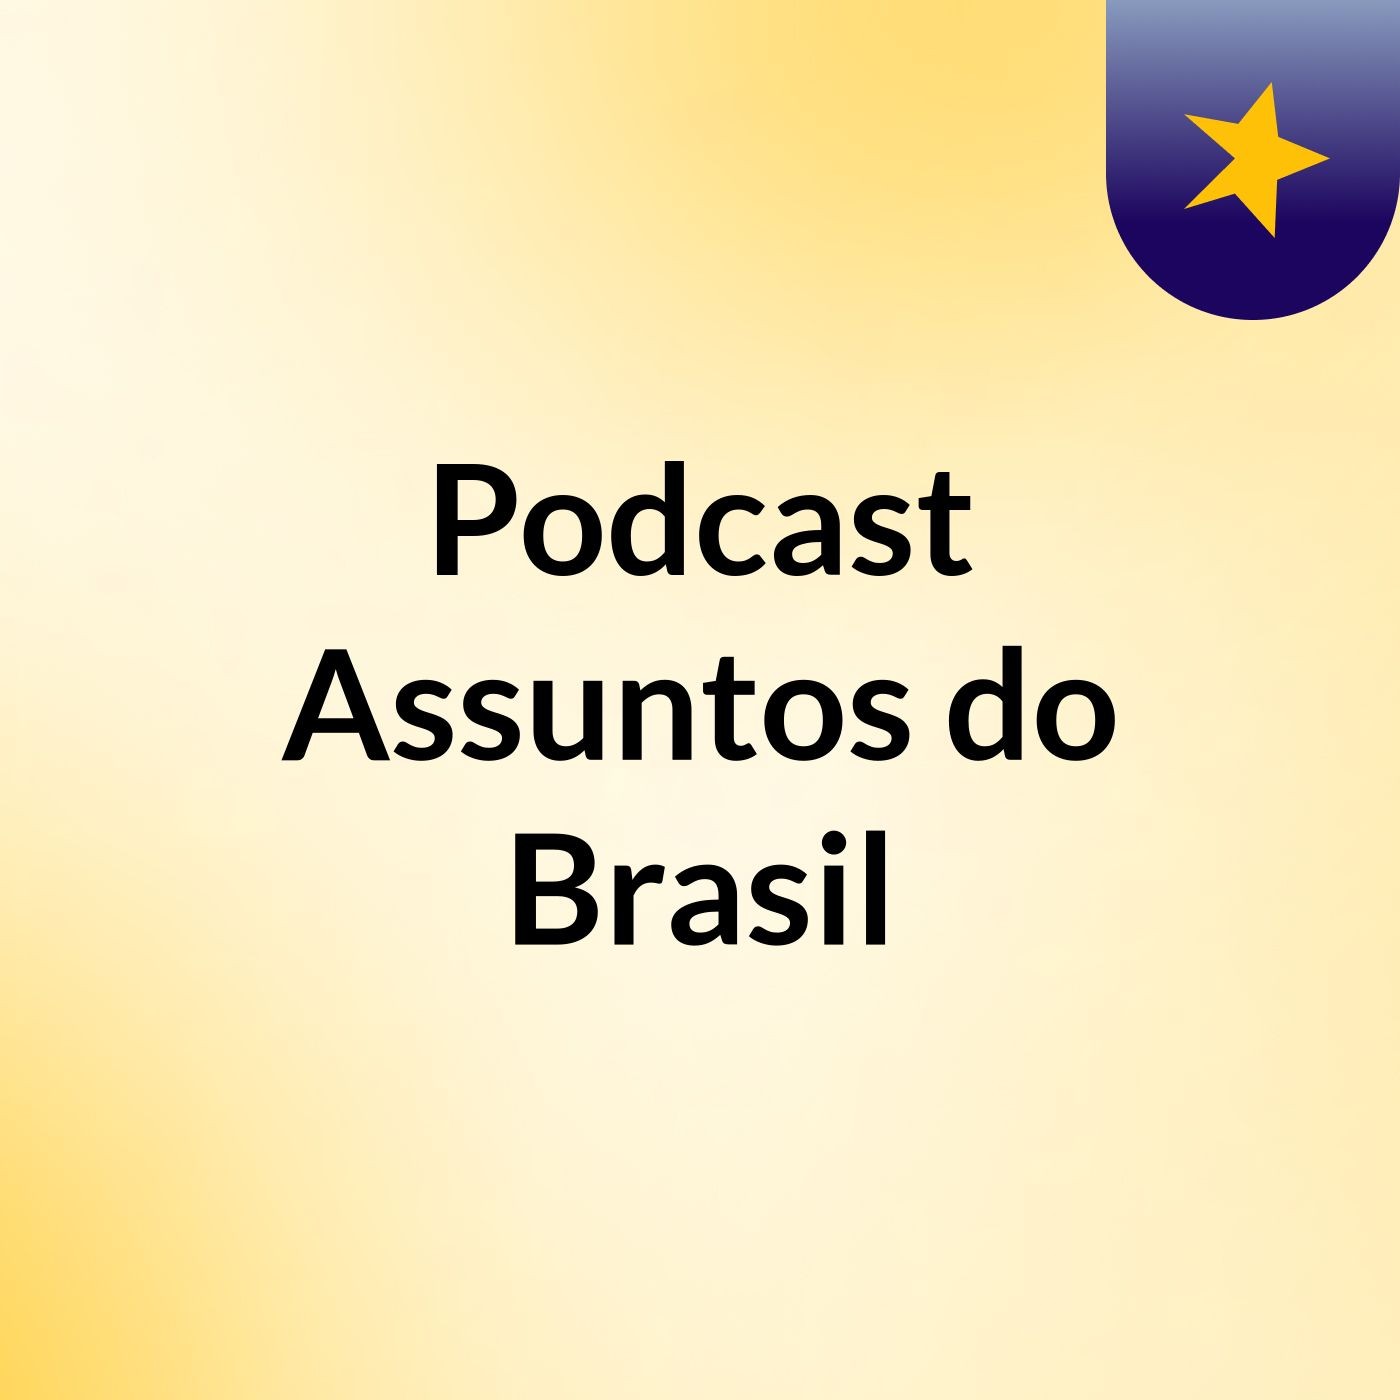 Podcast Assuntos do Brasil